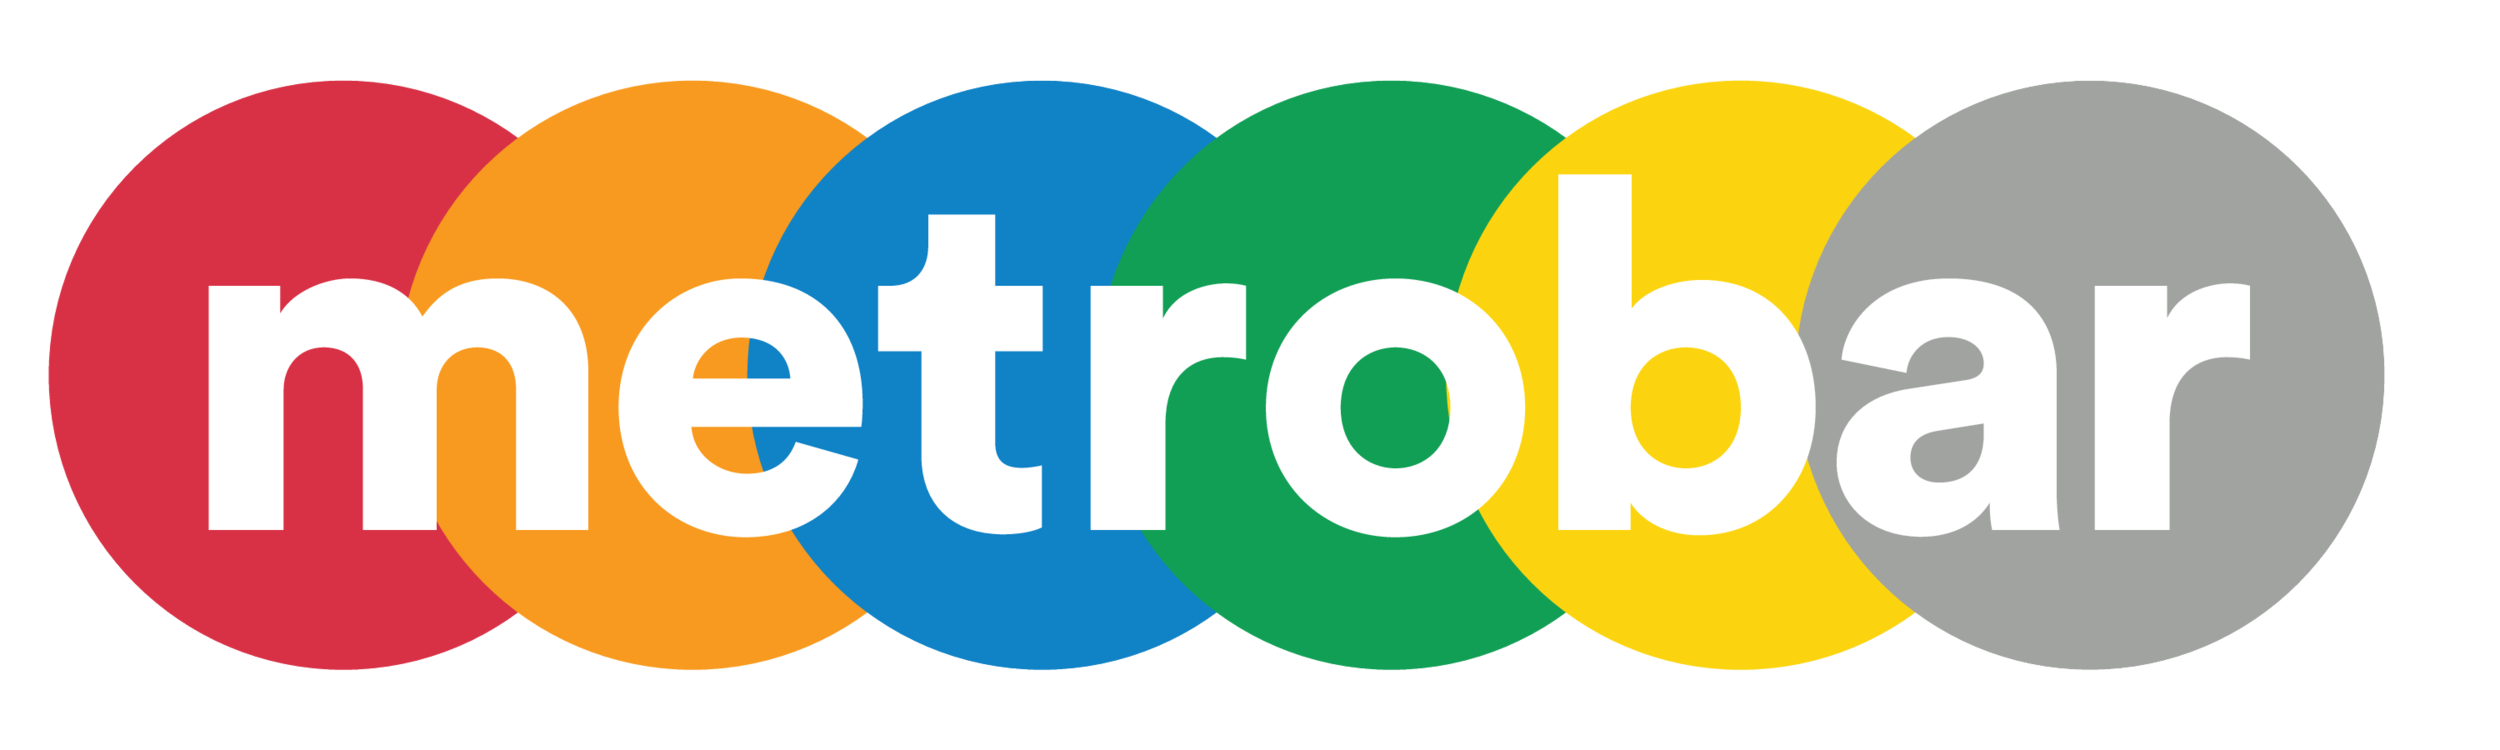 metrobar-logo-main - 051021-white-transparent.png